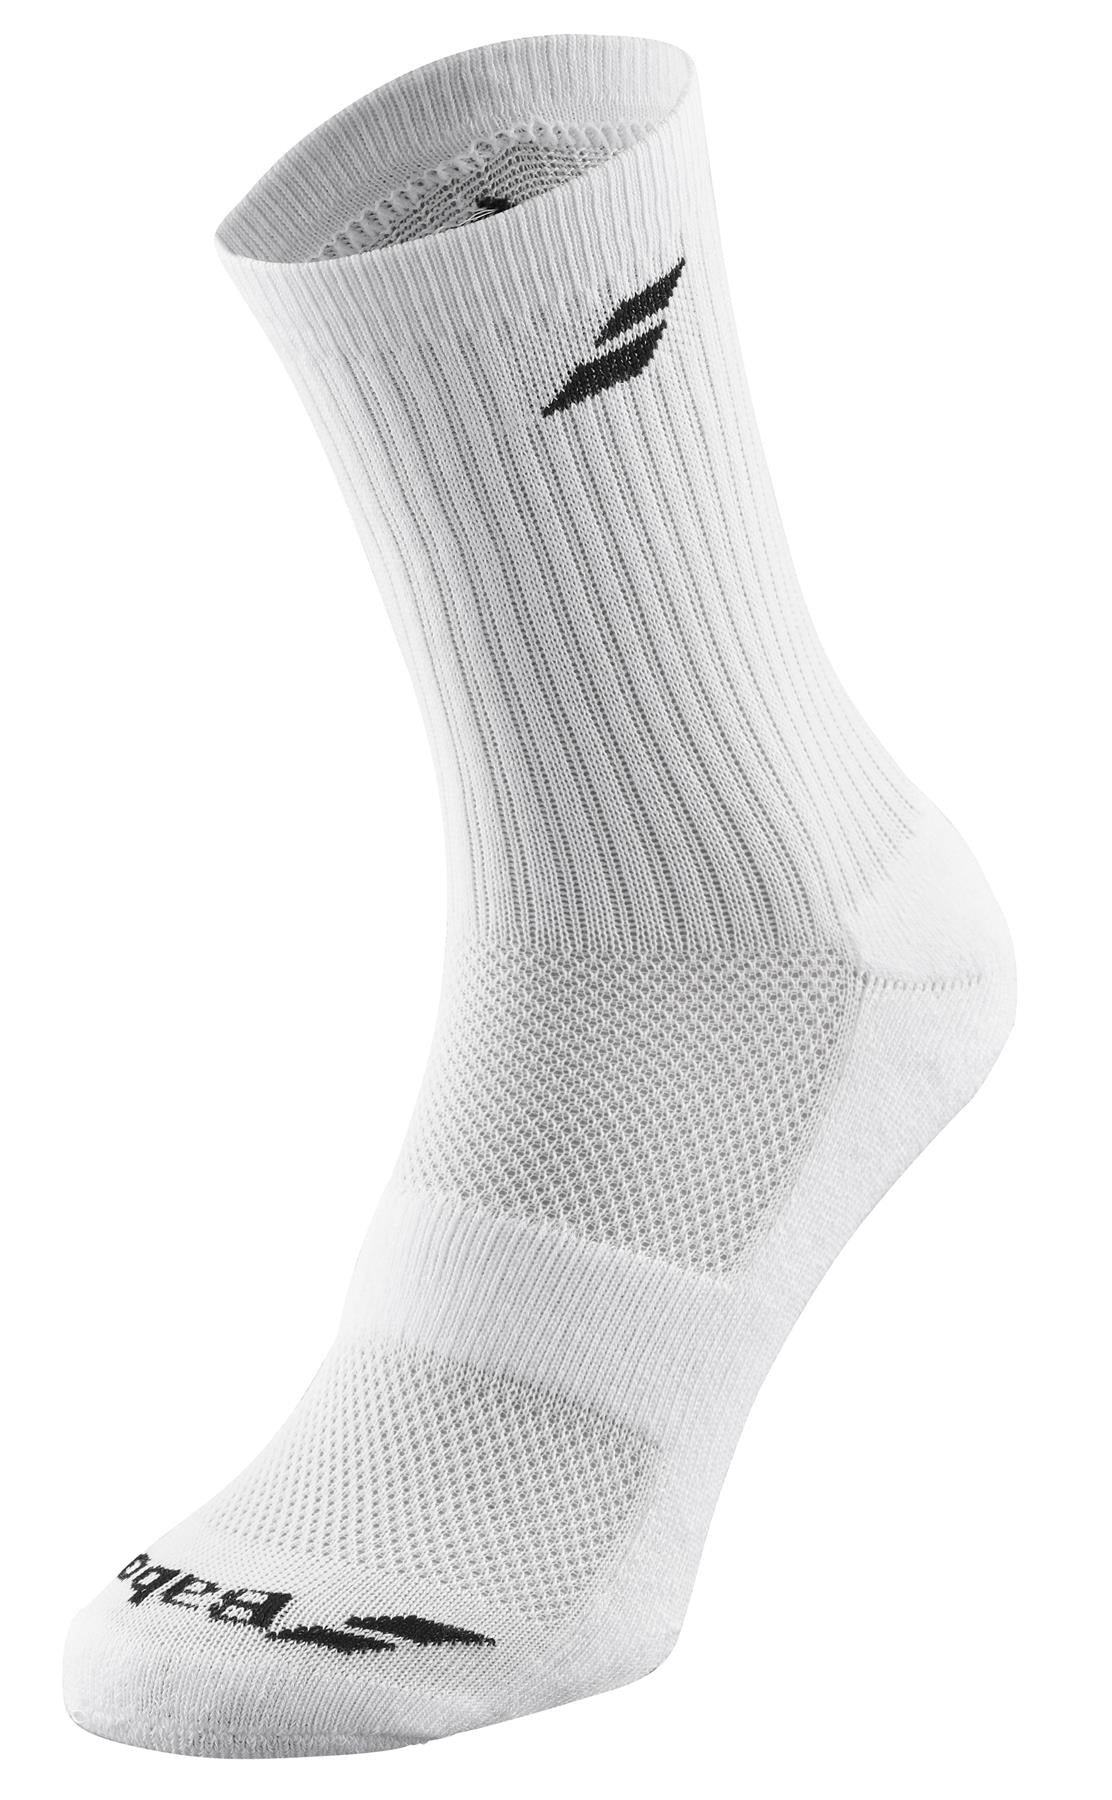 Babolat Long 3 Pack Tennis Socks - White